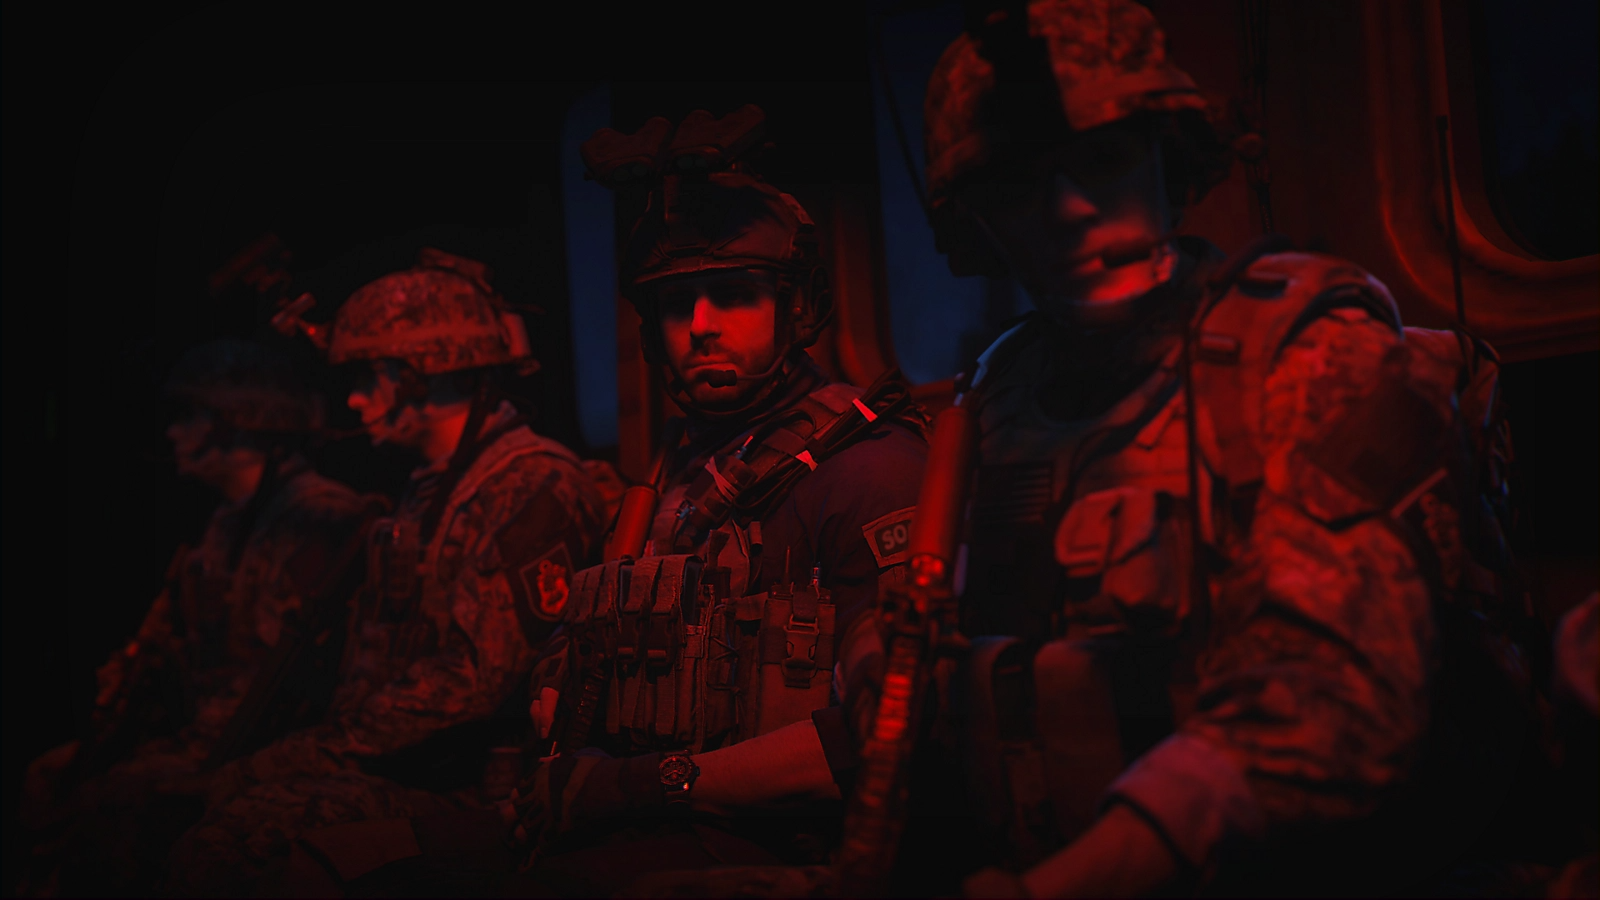 MEDIEN: Call of Duty: Modern Warfare II ist das meistverkaufte Spiel der Serie